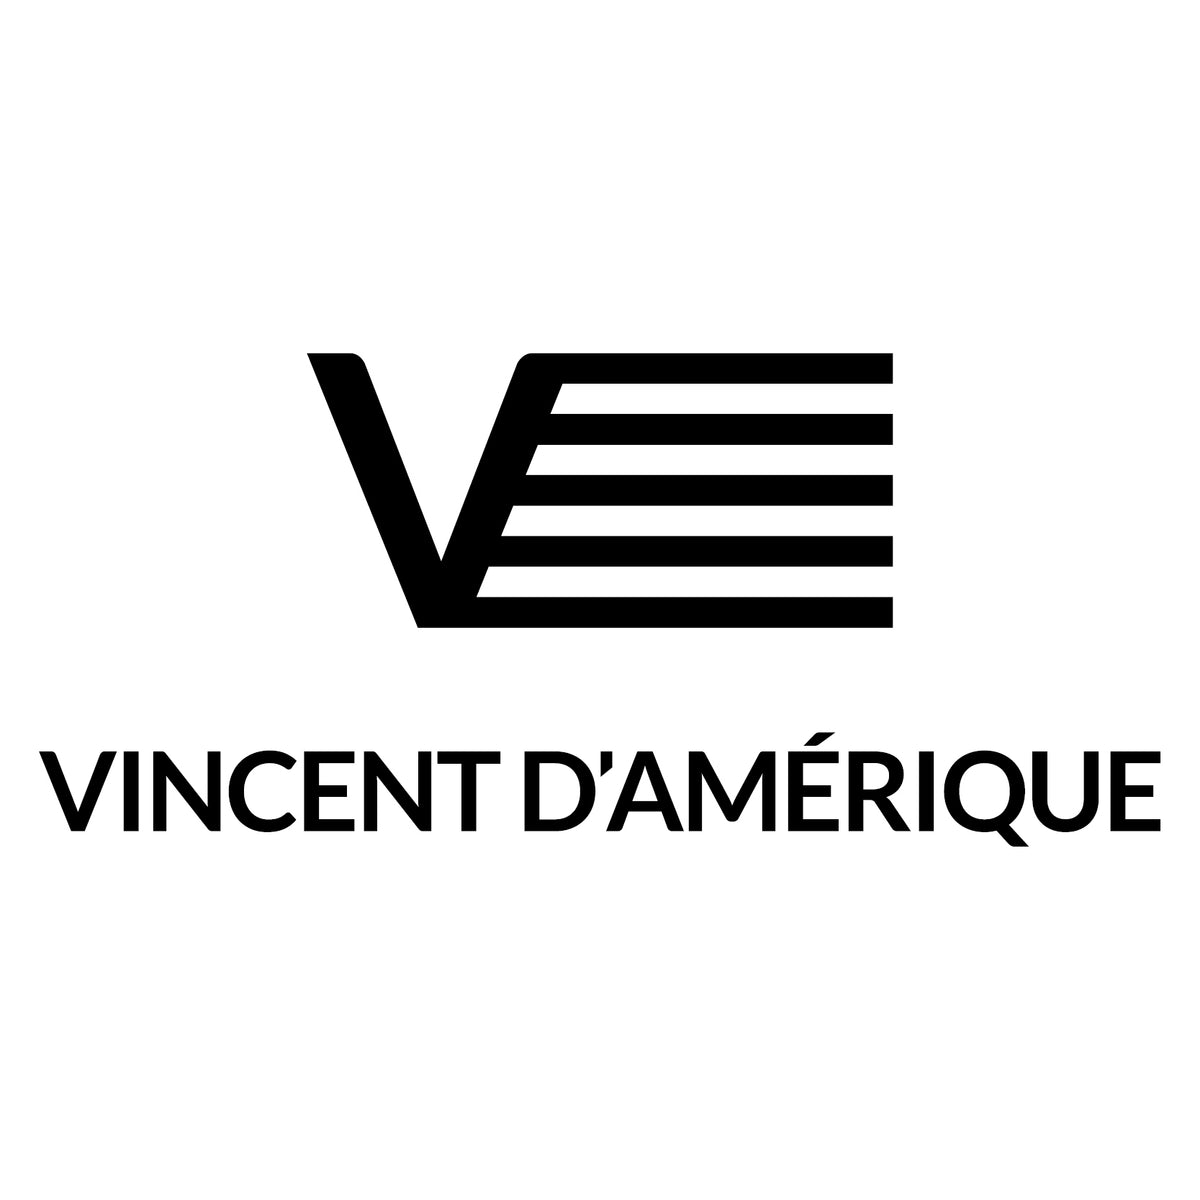 (c) Vincentdamerique.com